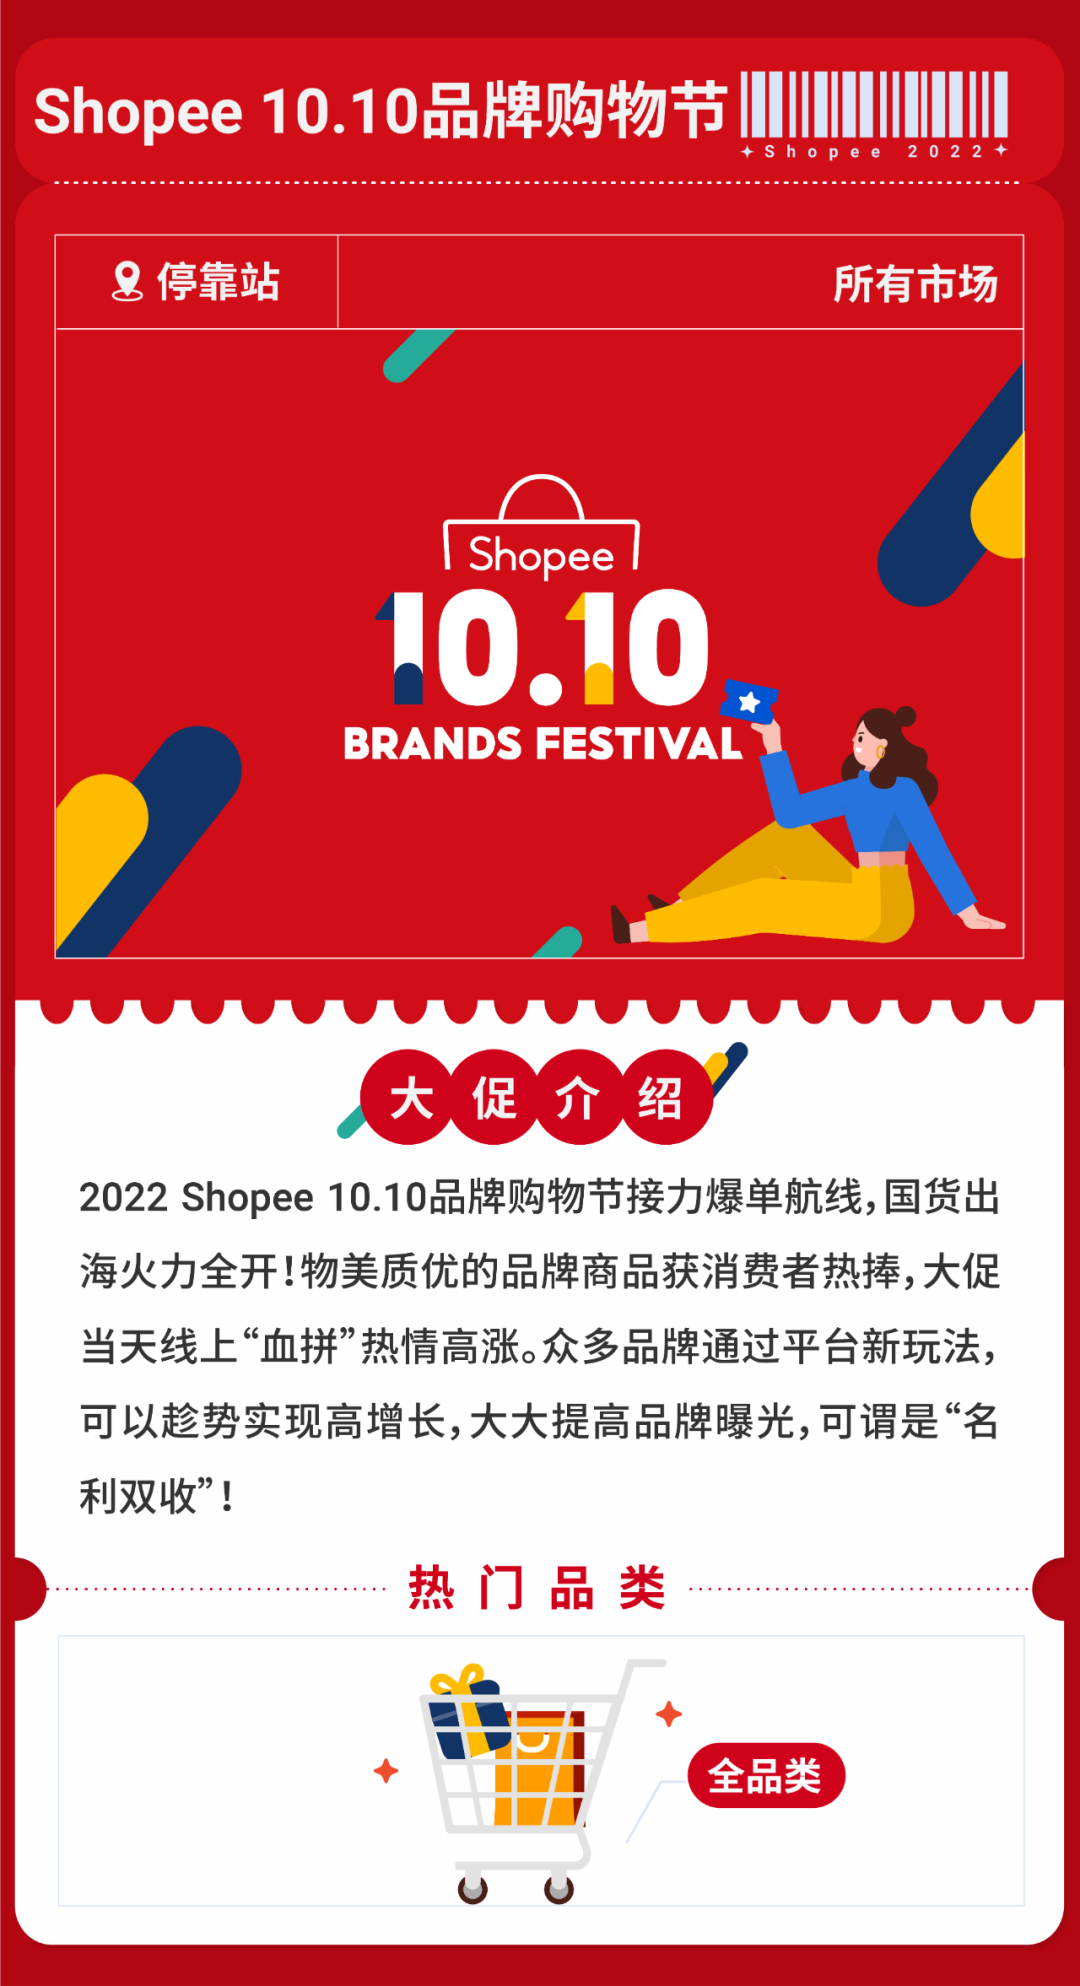 新鲜出炉! 2022 Shopee大促日历公布, 速看全年营销重点及热卖品类